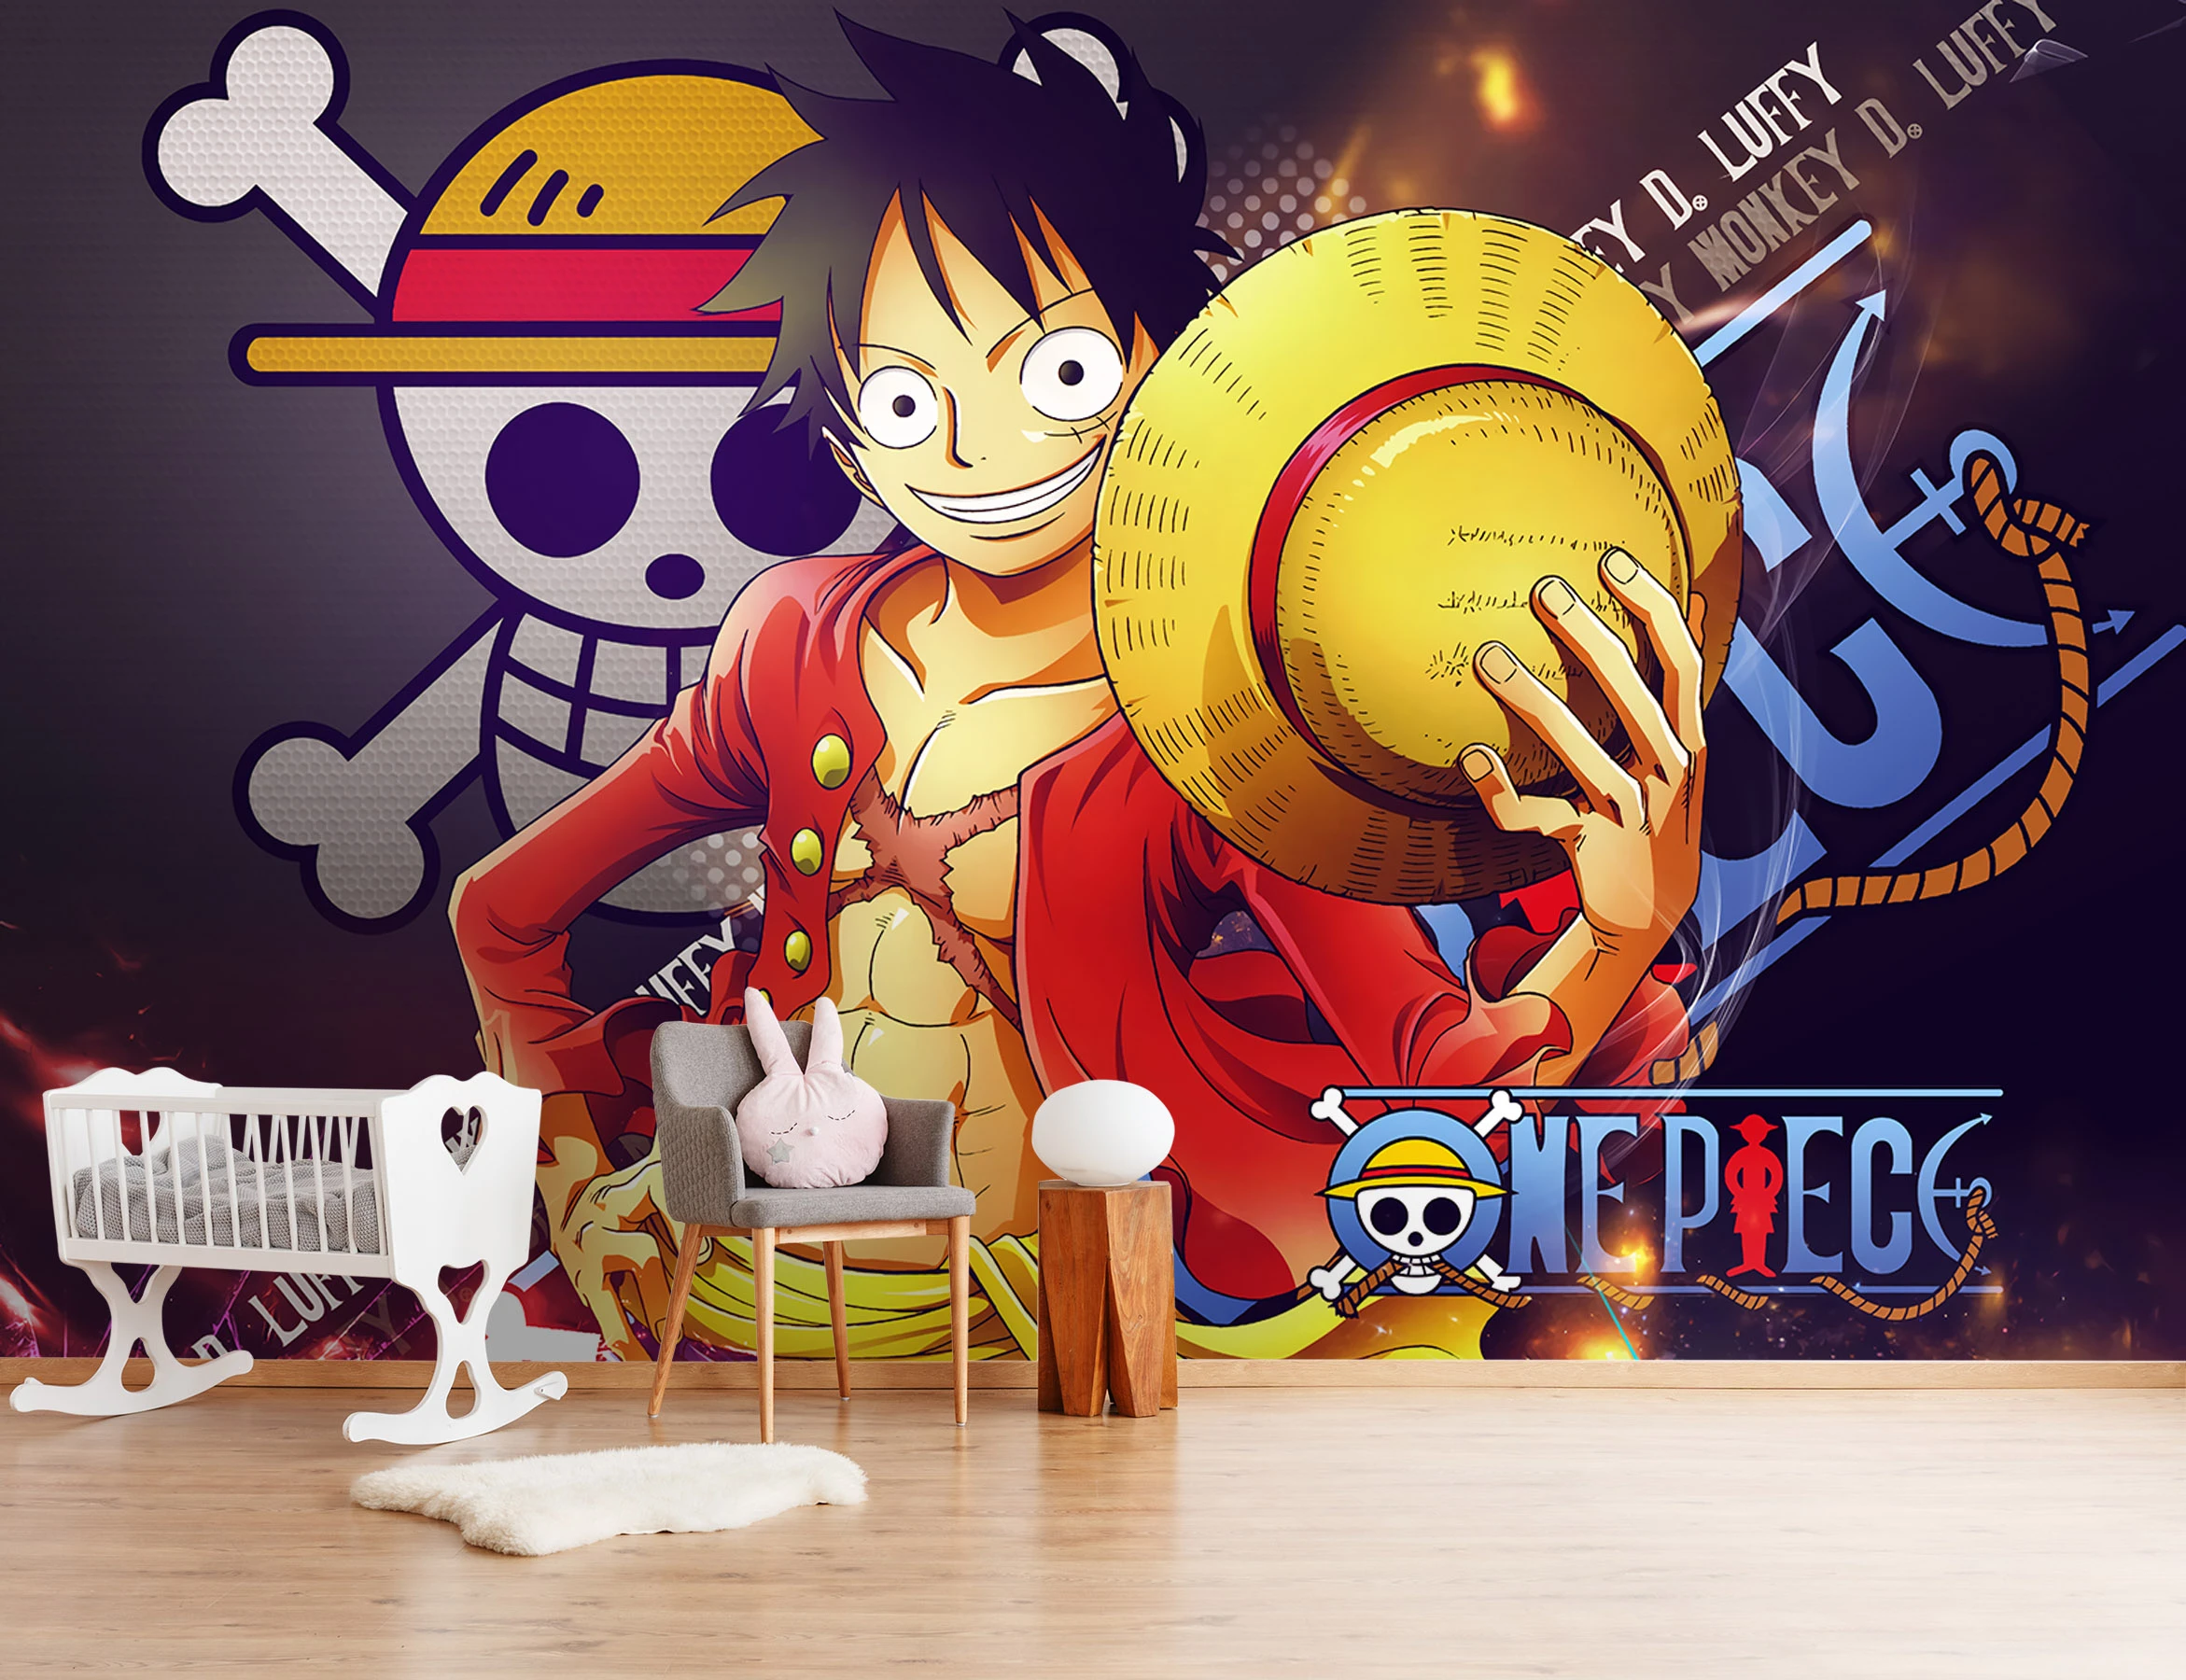 One Piece iPhone X Wallpapers - Top Những Hình Ảnh Đẹp